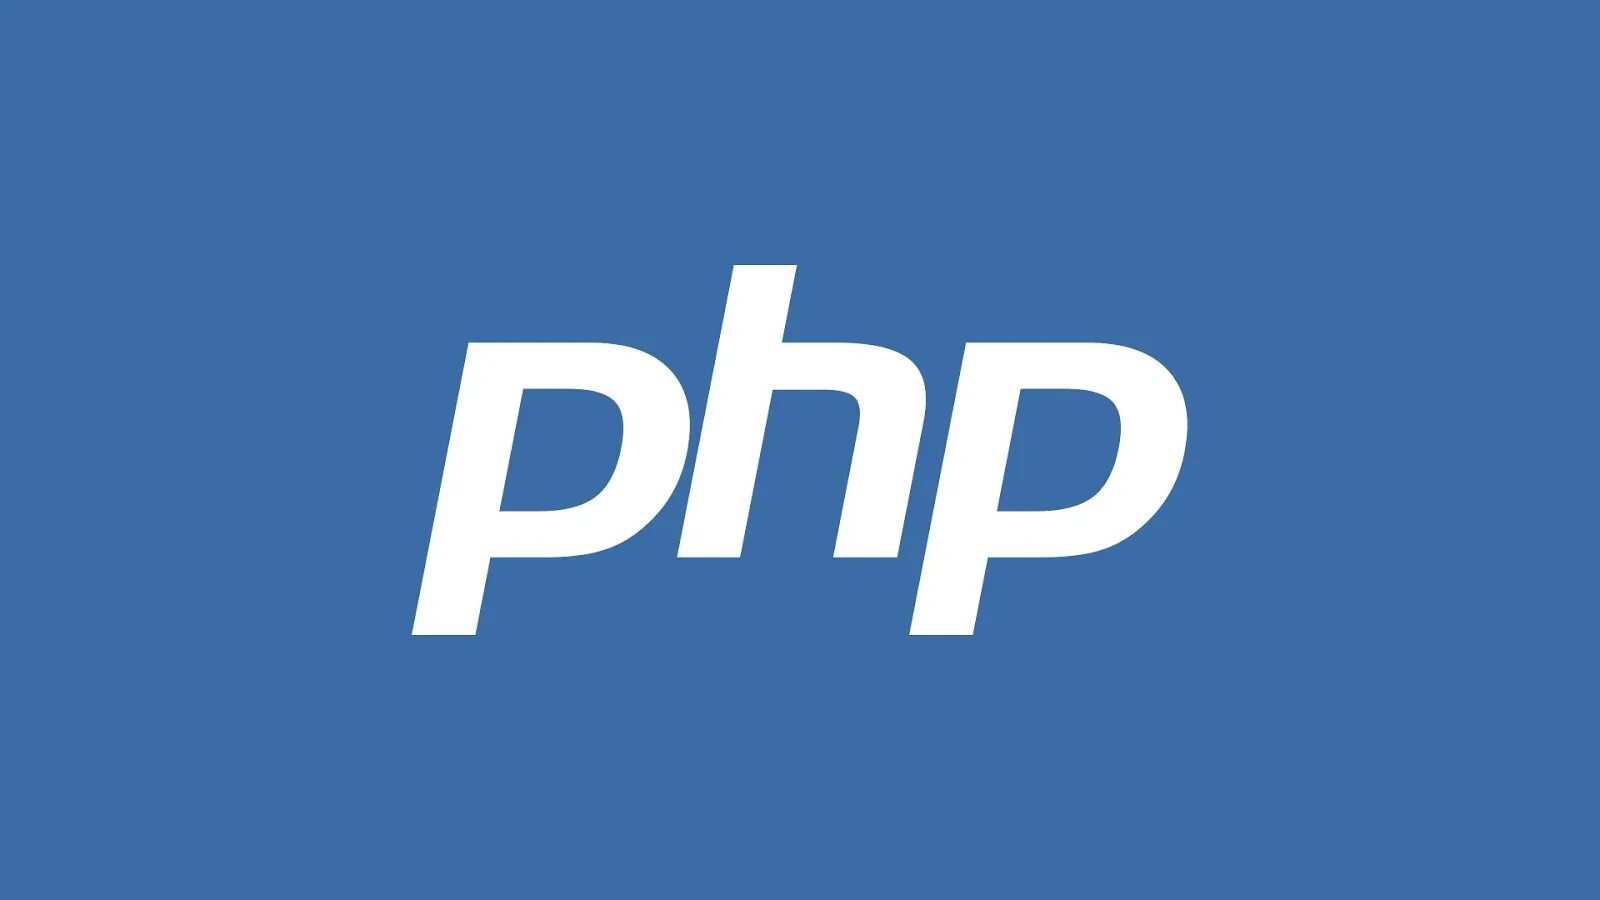 Php язык программирования логотип. Php иконка. Php картинка. Php программирование лого. Php import